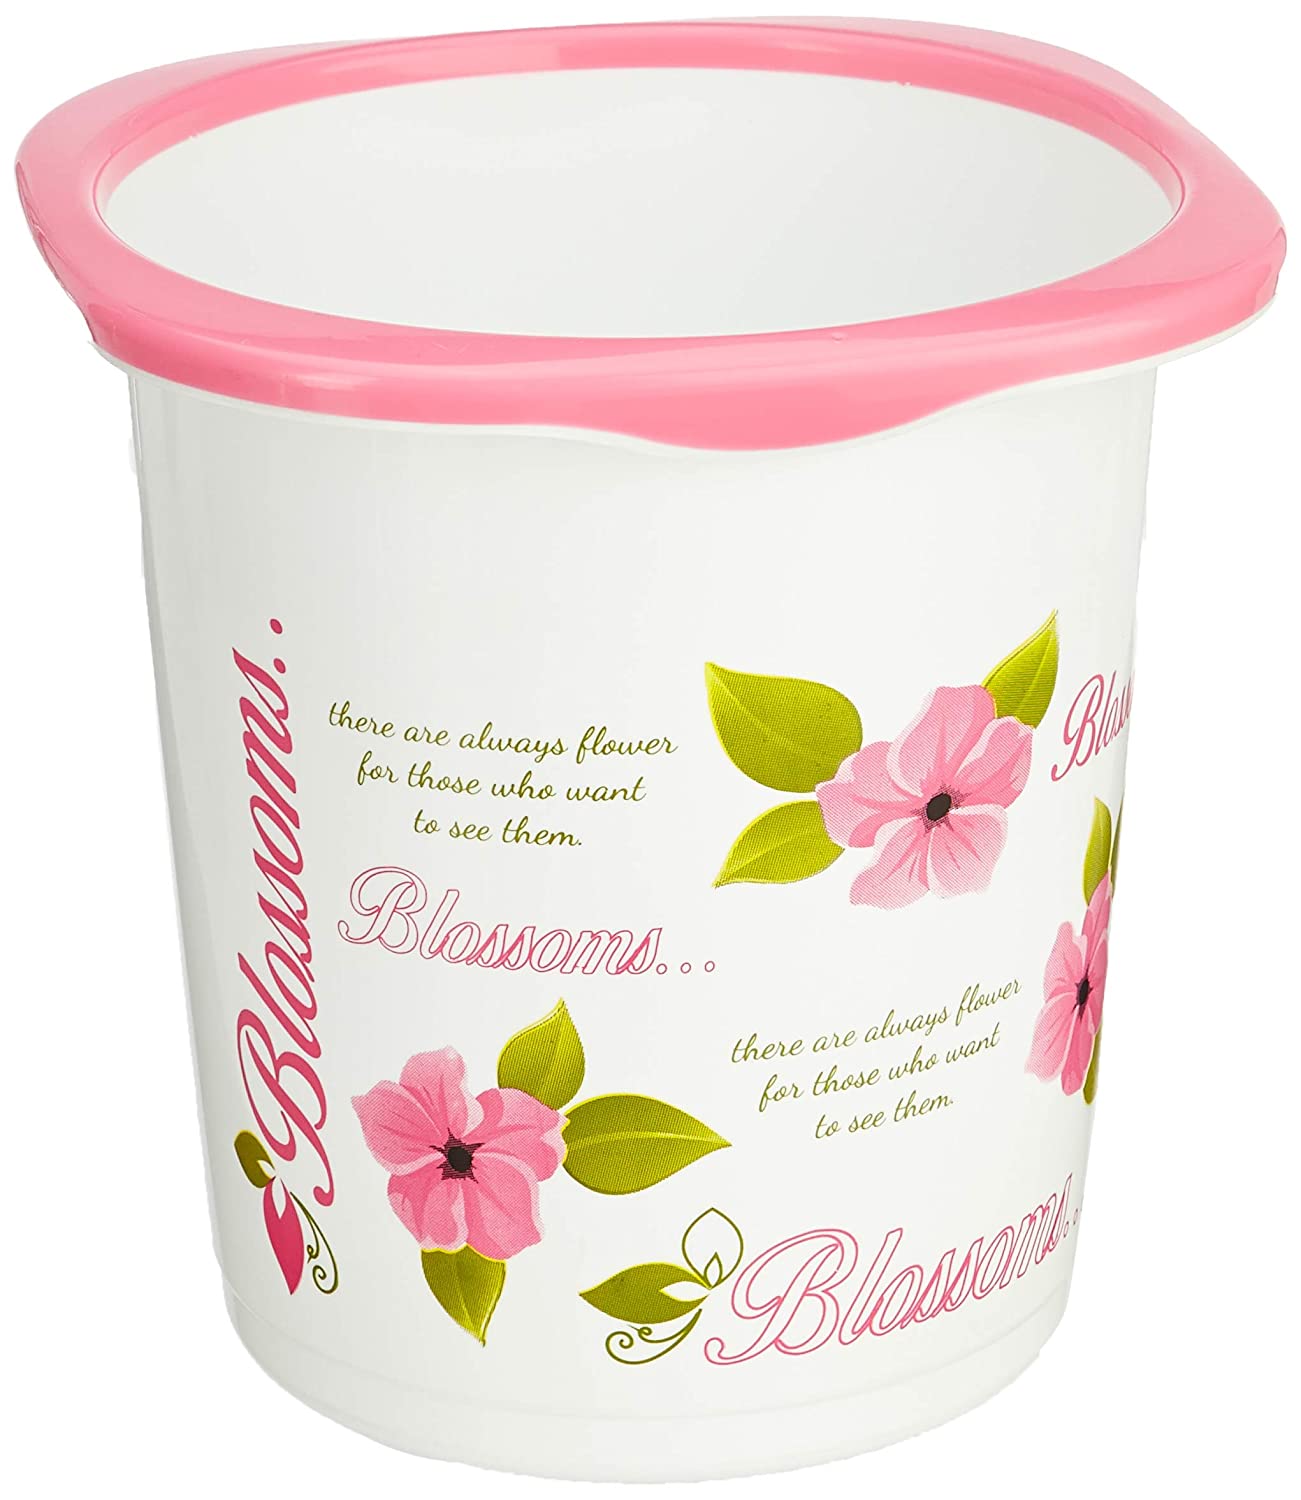 Cello Blossom Printed Plastic Dustbin / Garbage Bin - White & Pink